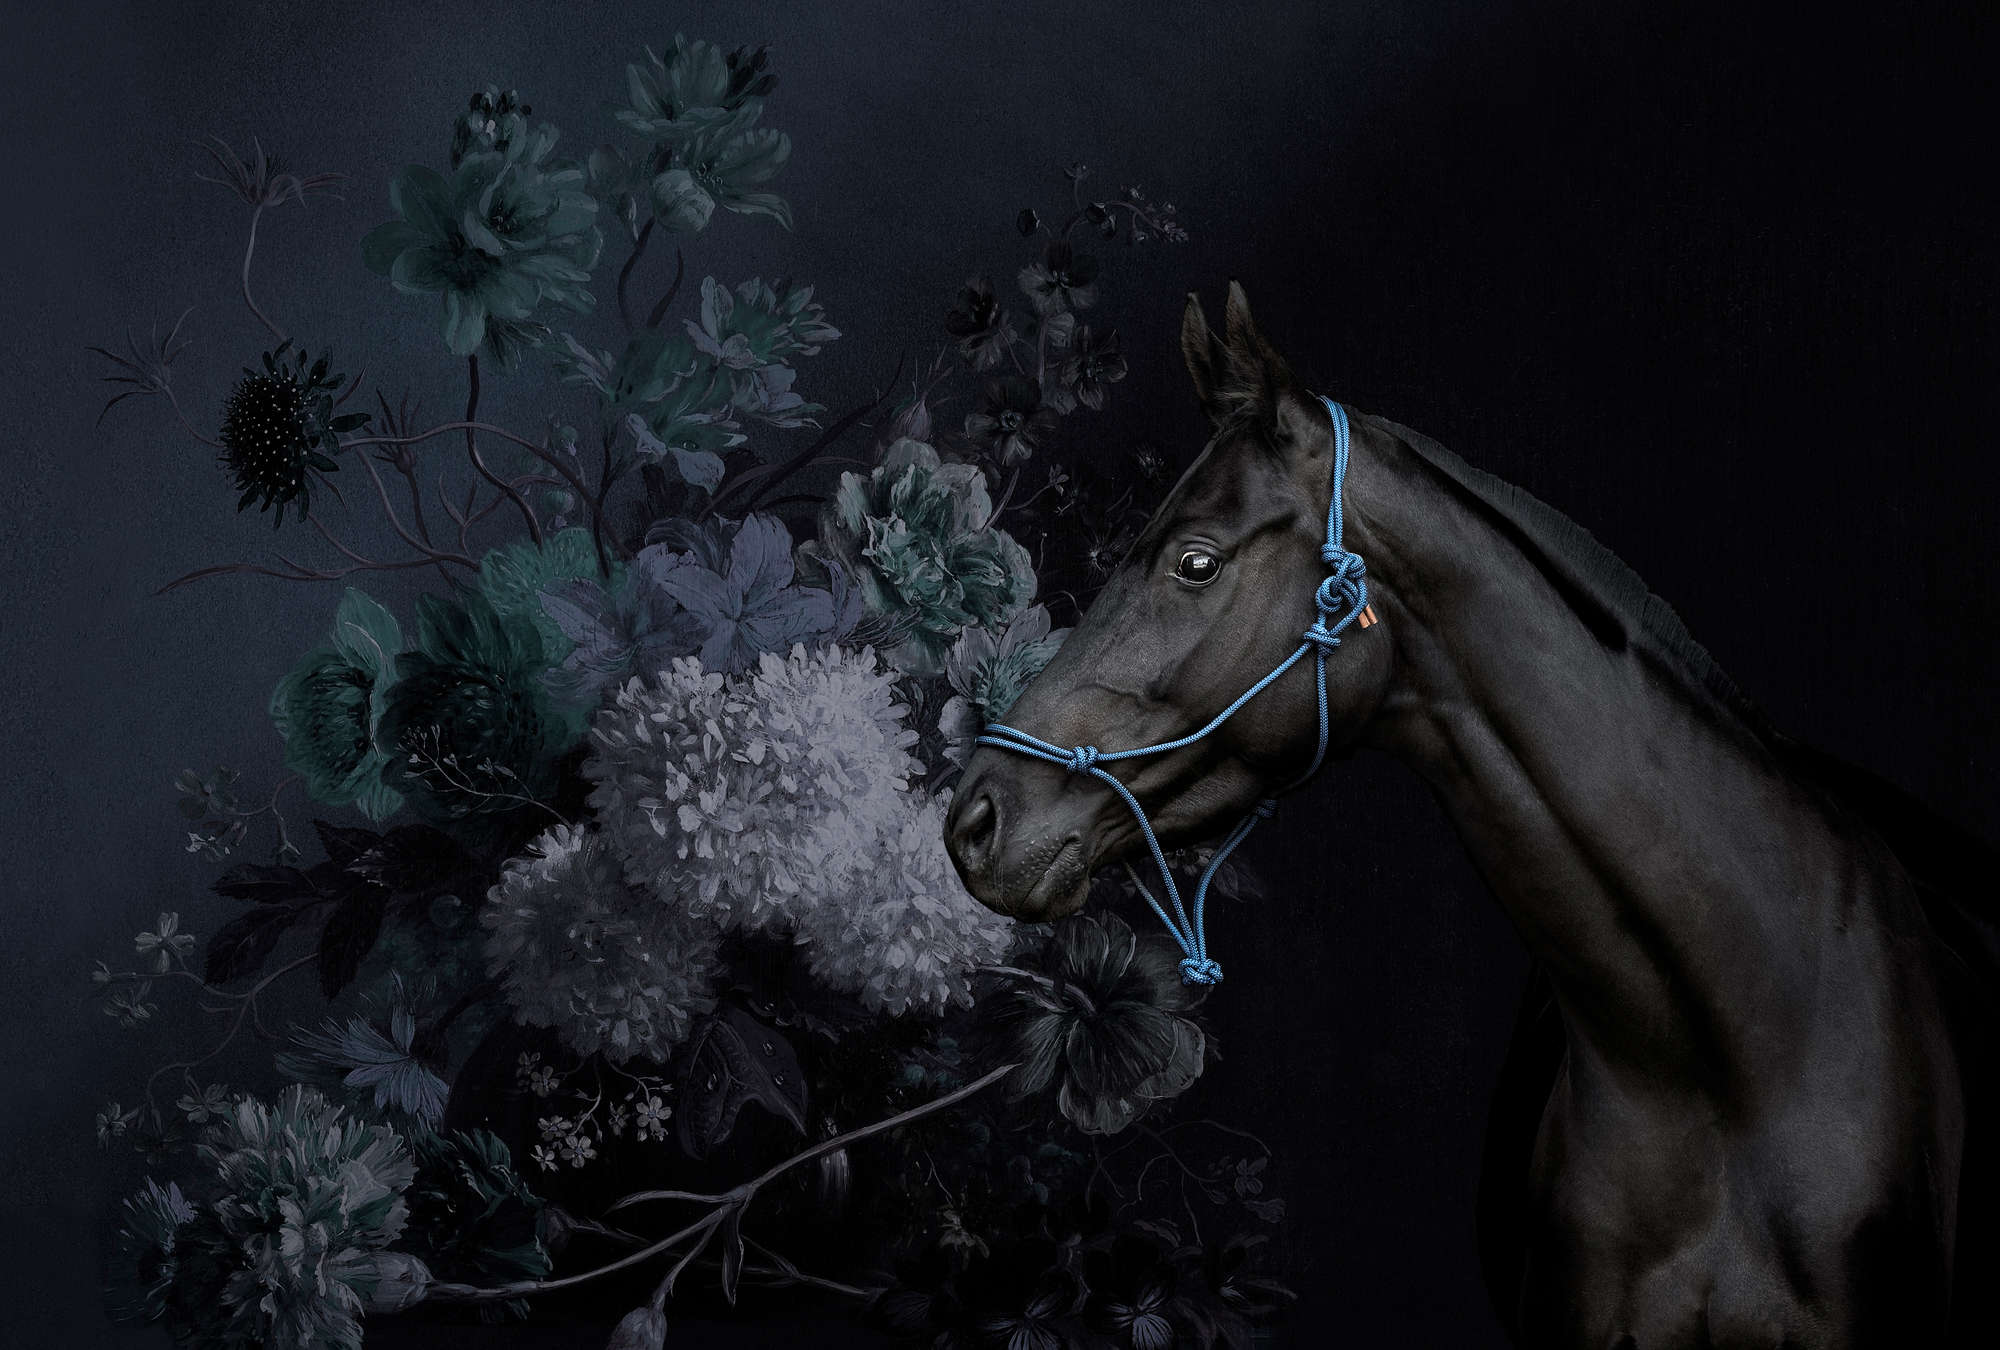             Paarden portretstijl muurschildering met bloemen
        